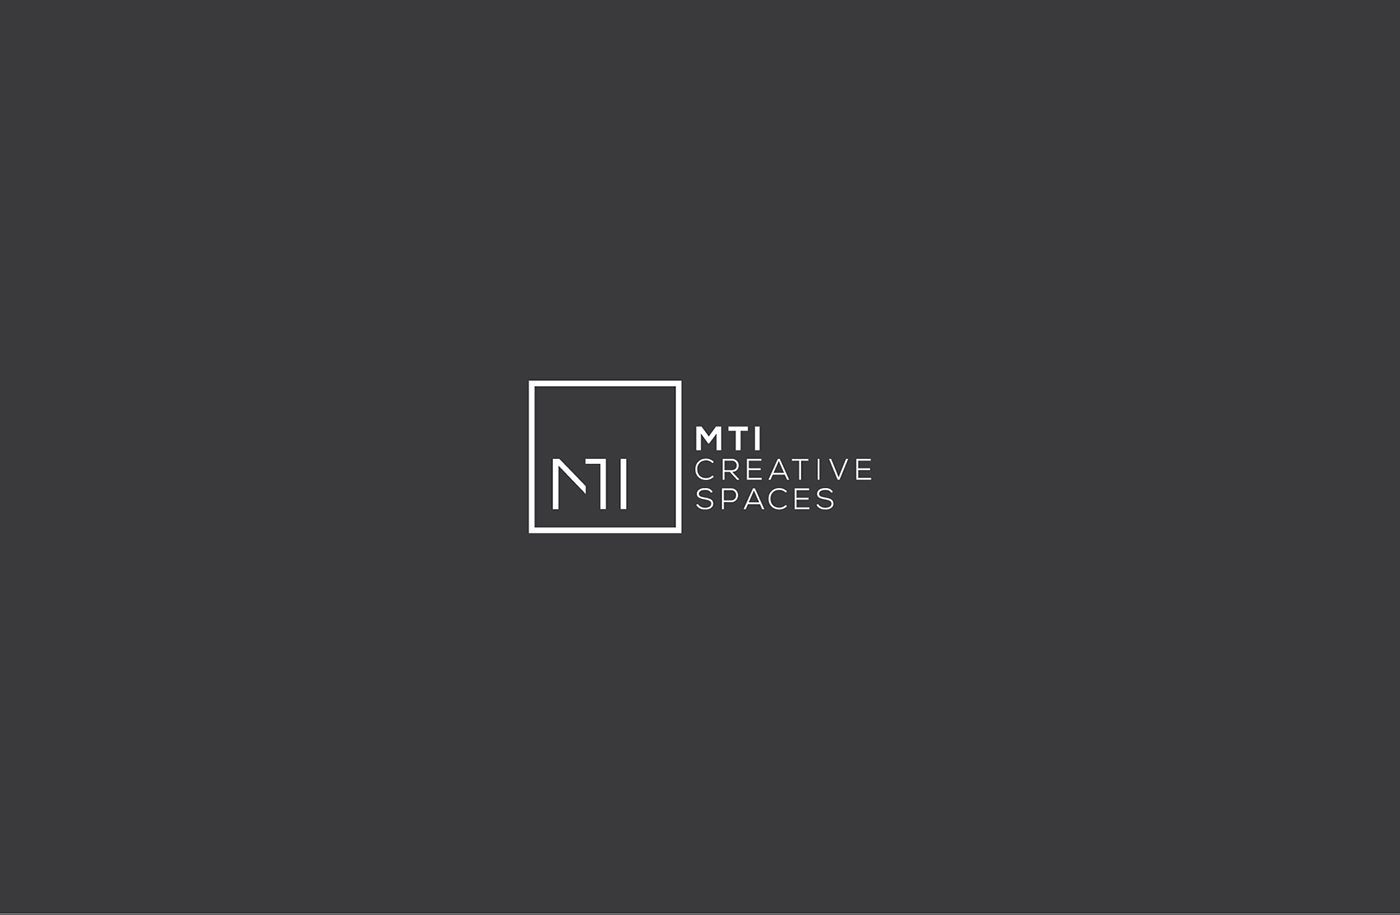 MTI architect LBANON minimalist graphic design brand building Space 